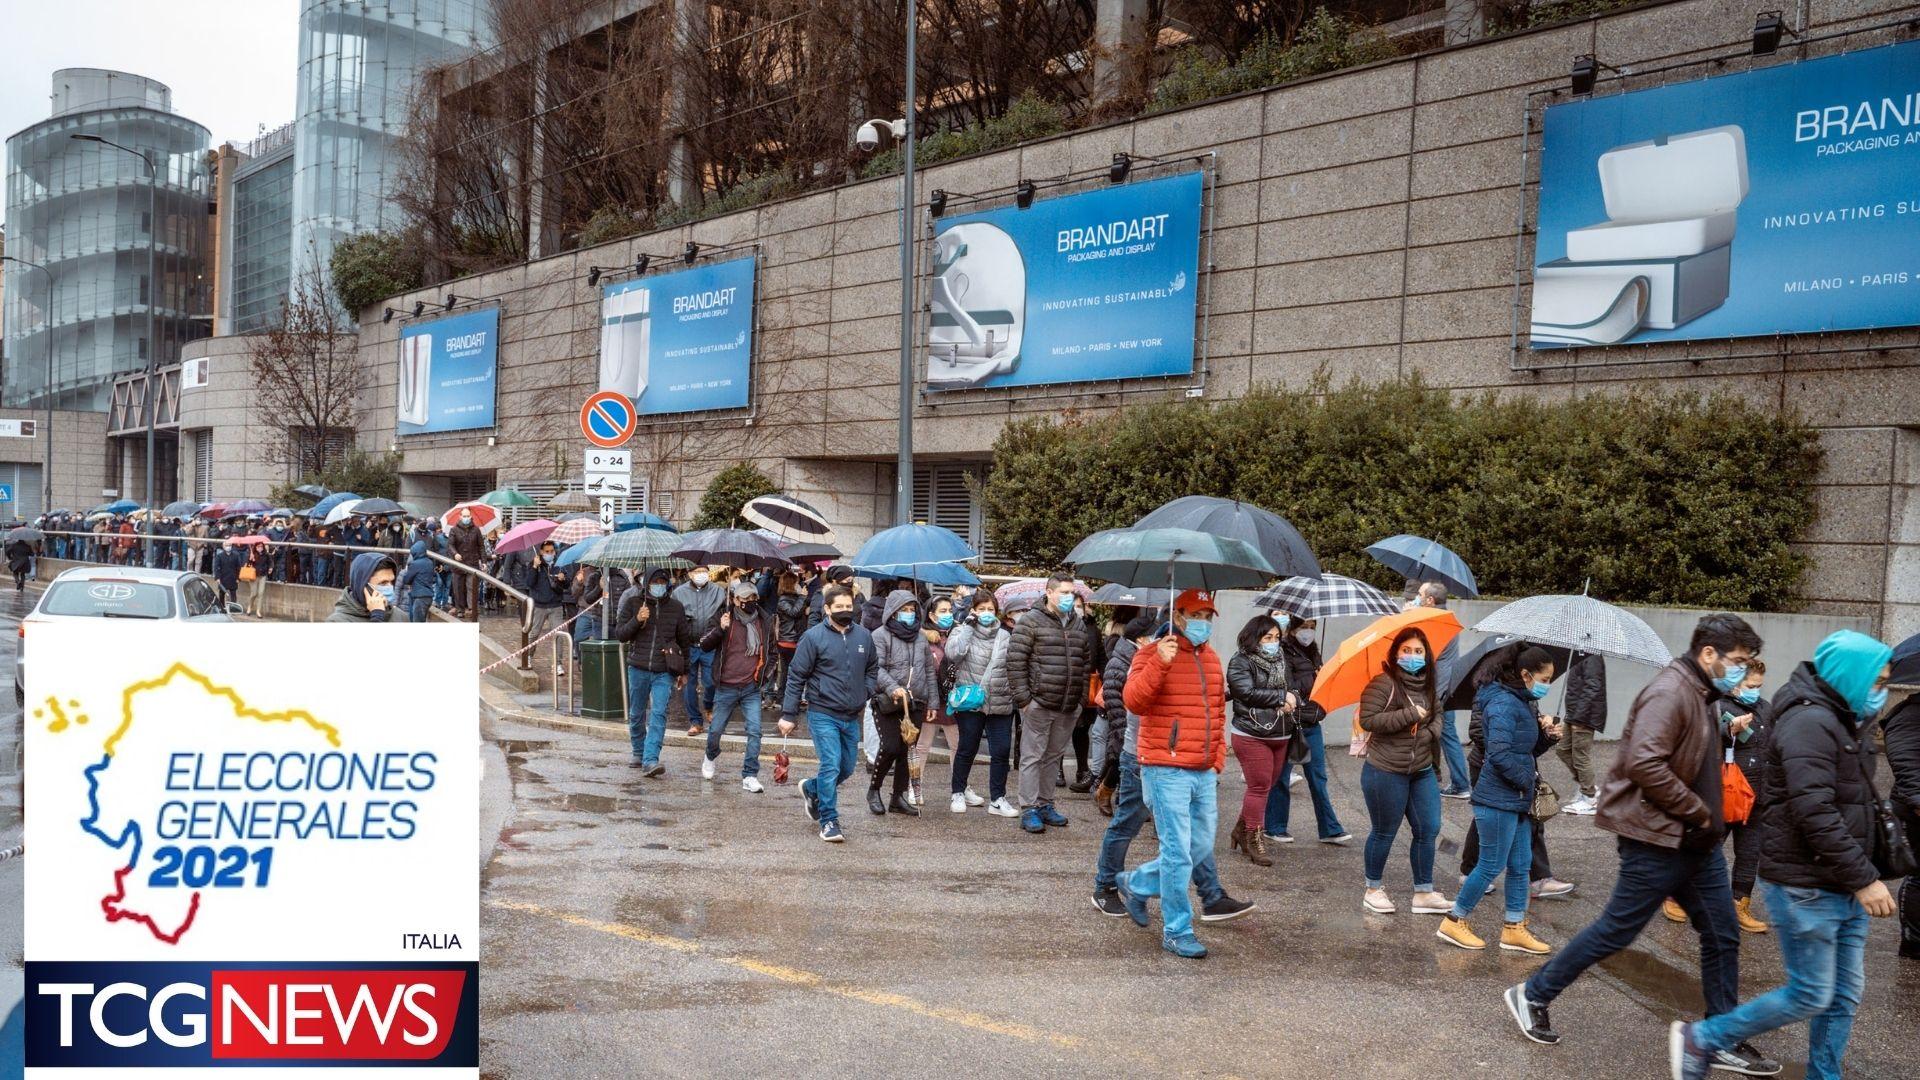 Grande affluenza degli ecuadoriani al seggio elettorale di Milano